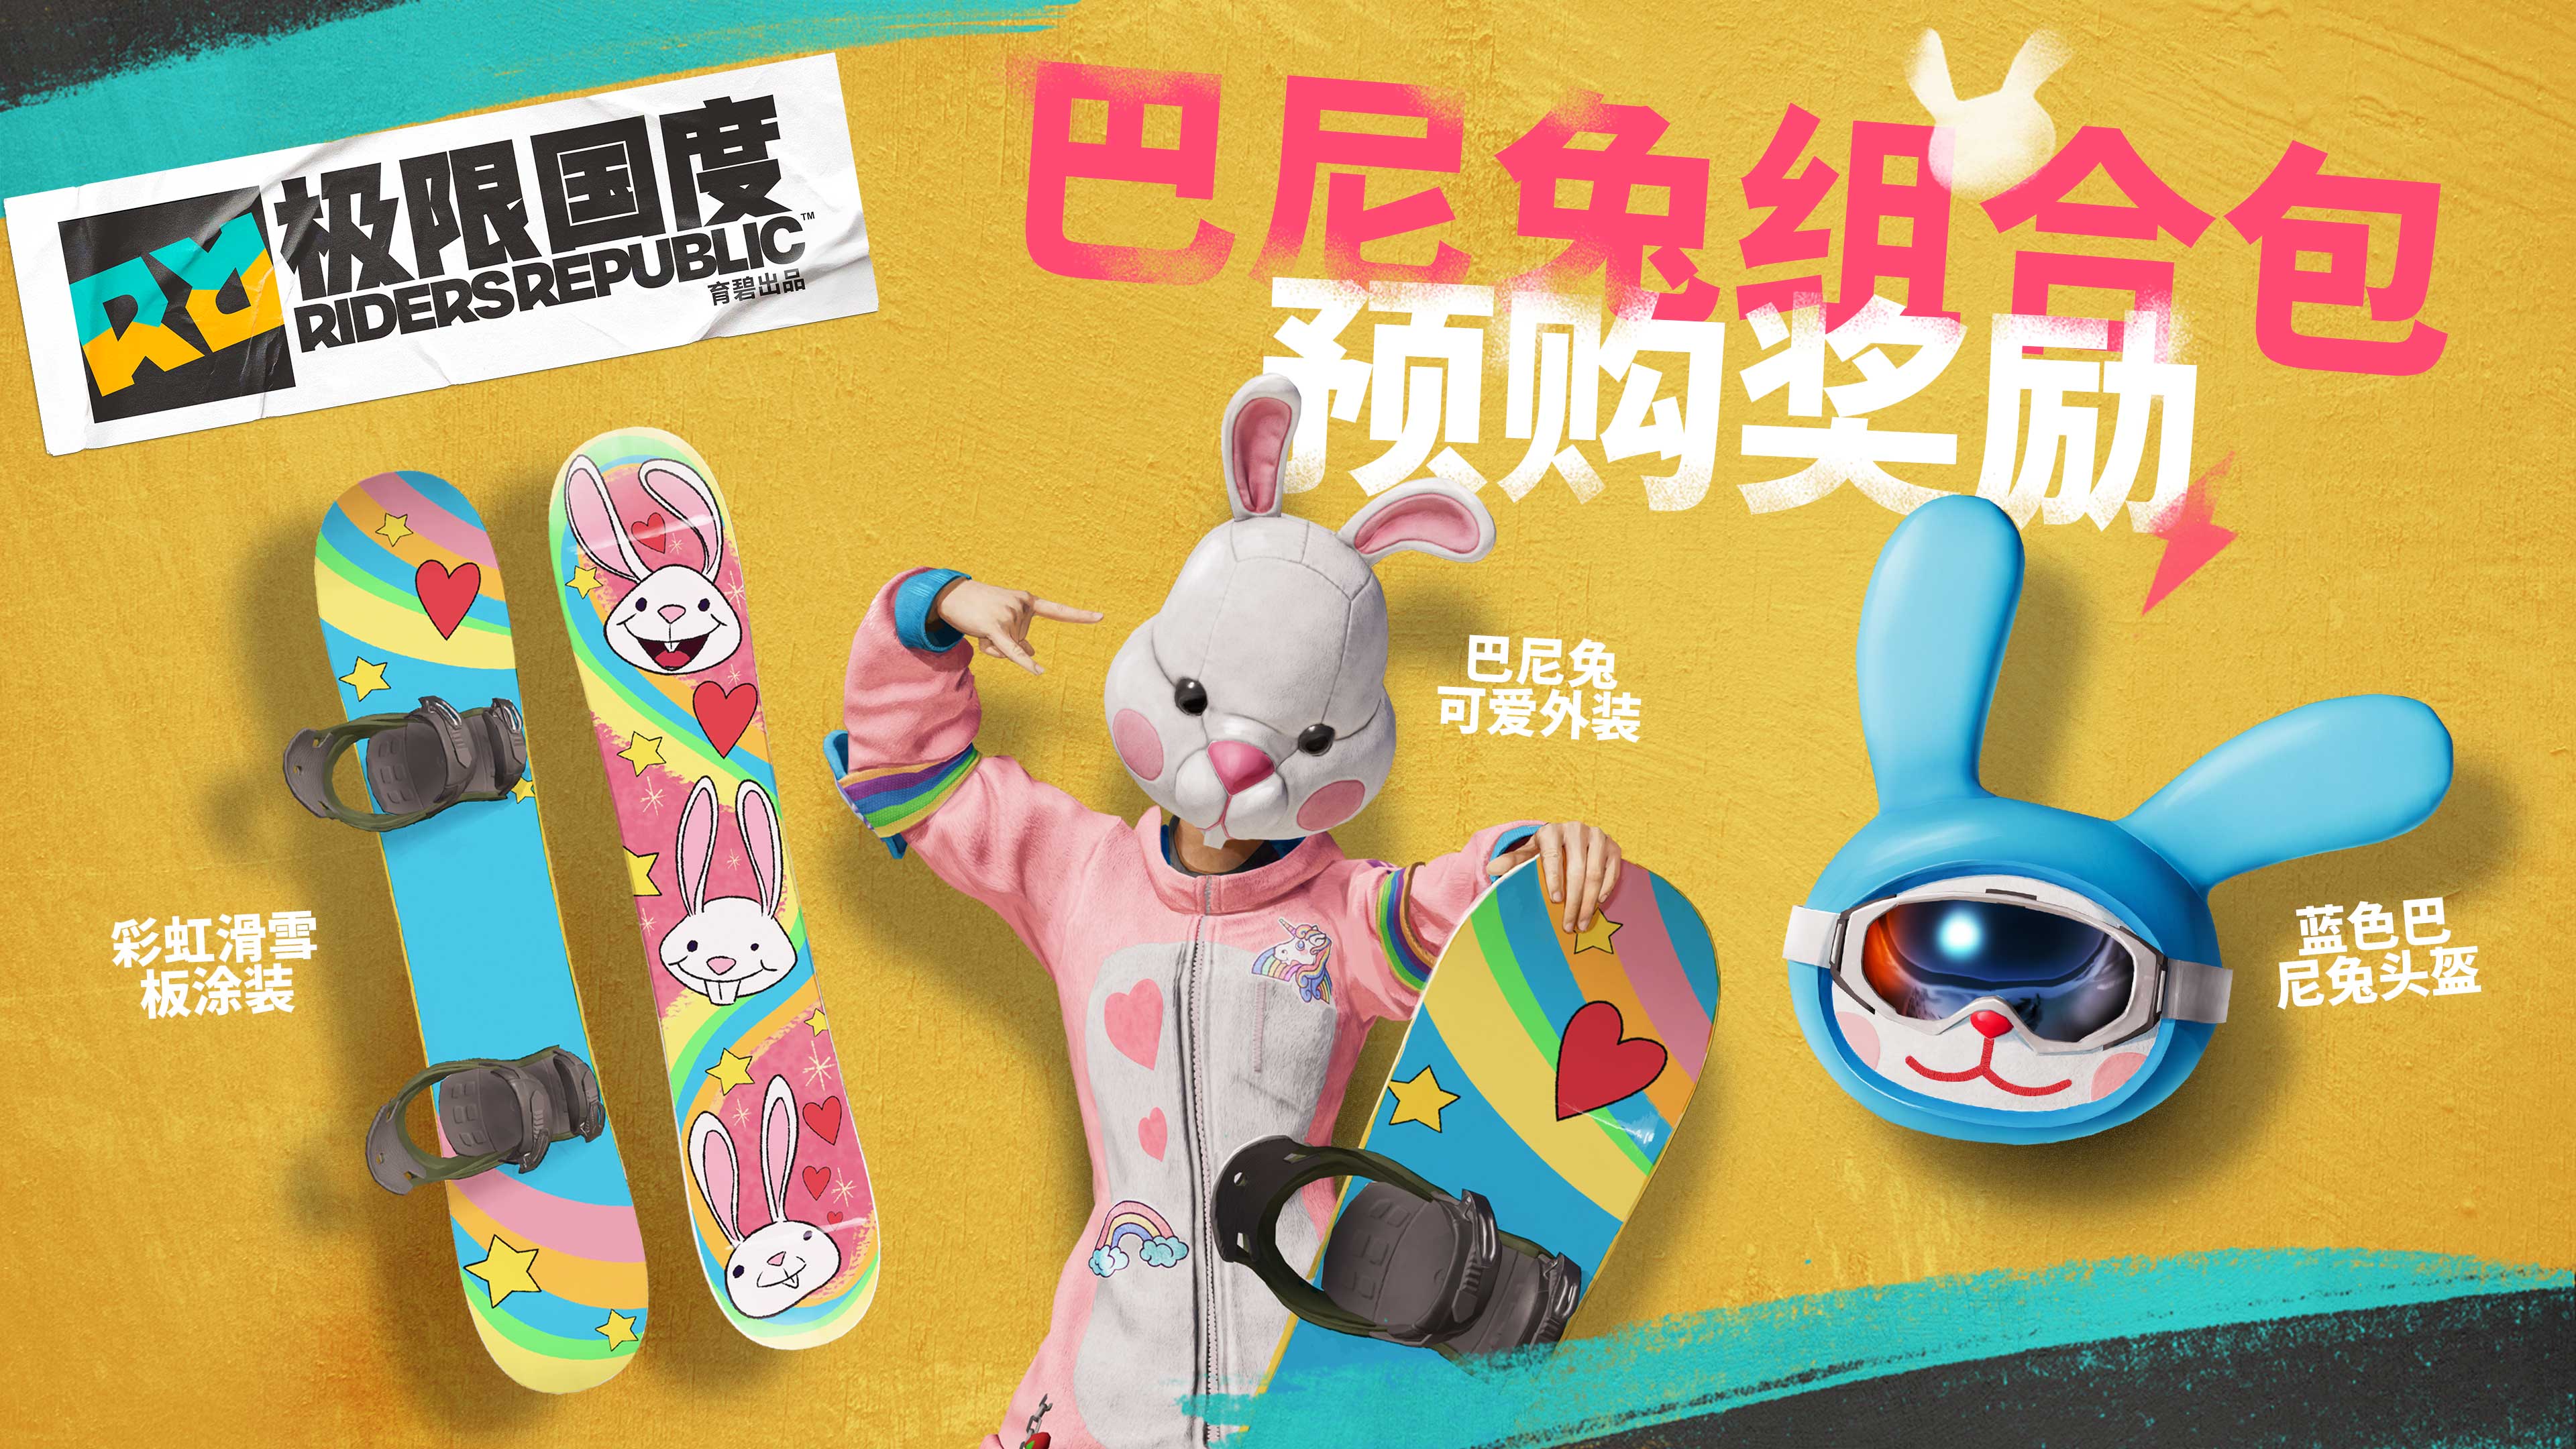 《极限国度》预购特典巴尼兔组合包演示 “猛男”配色